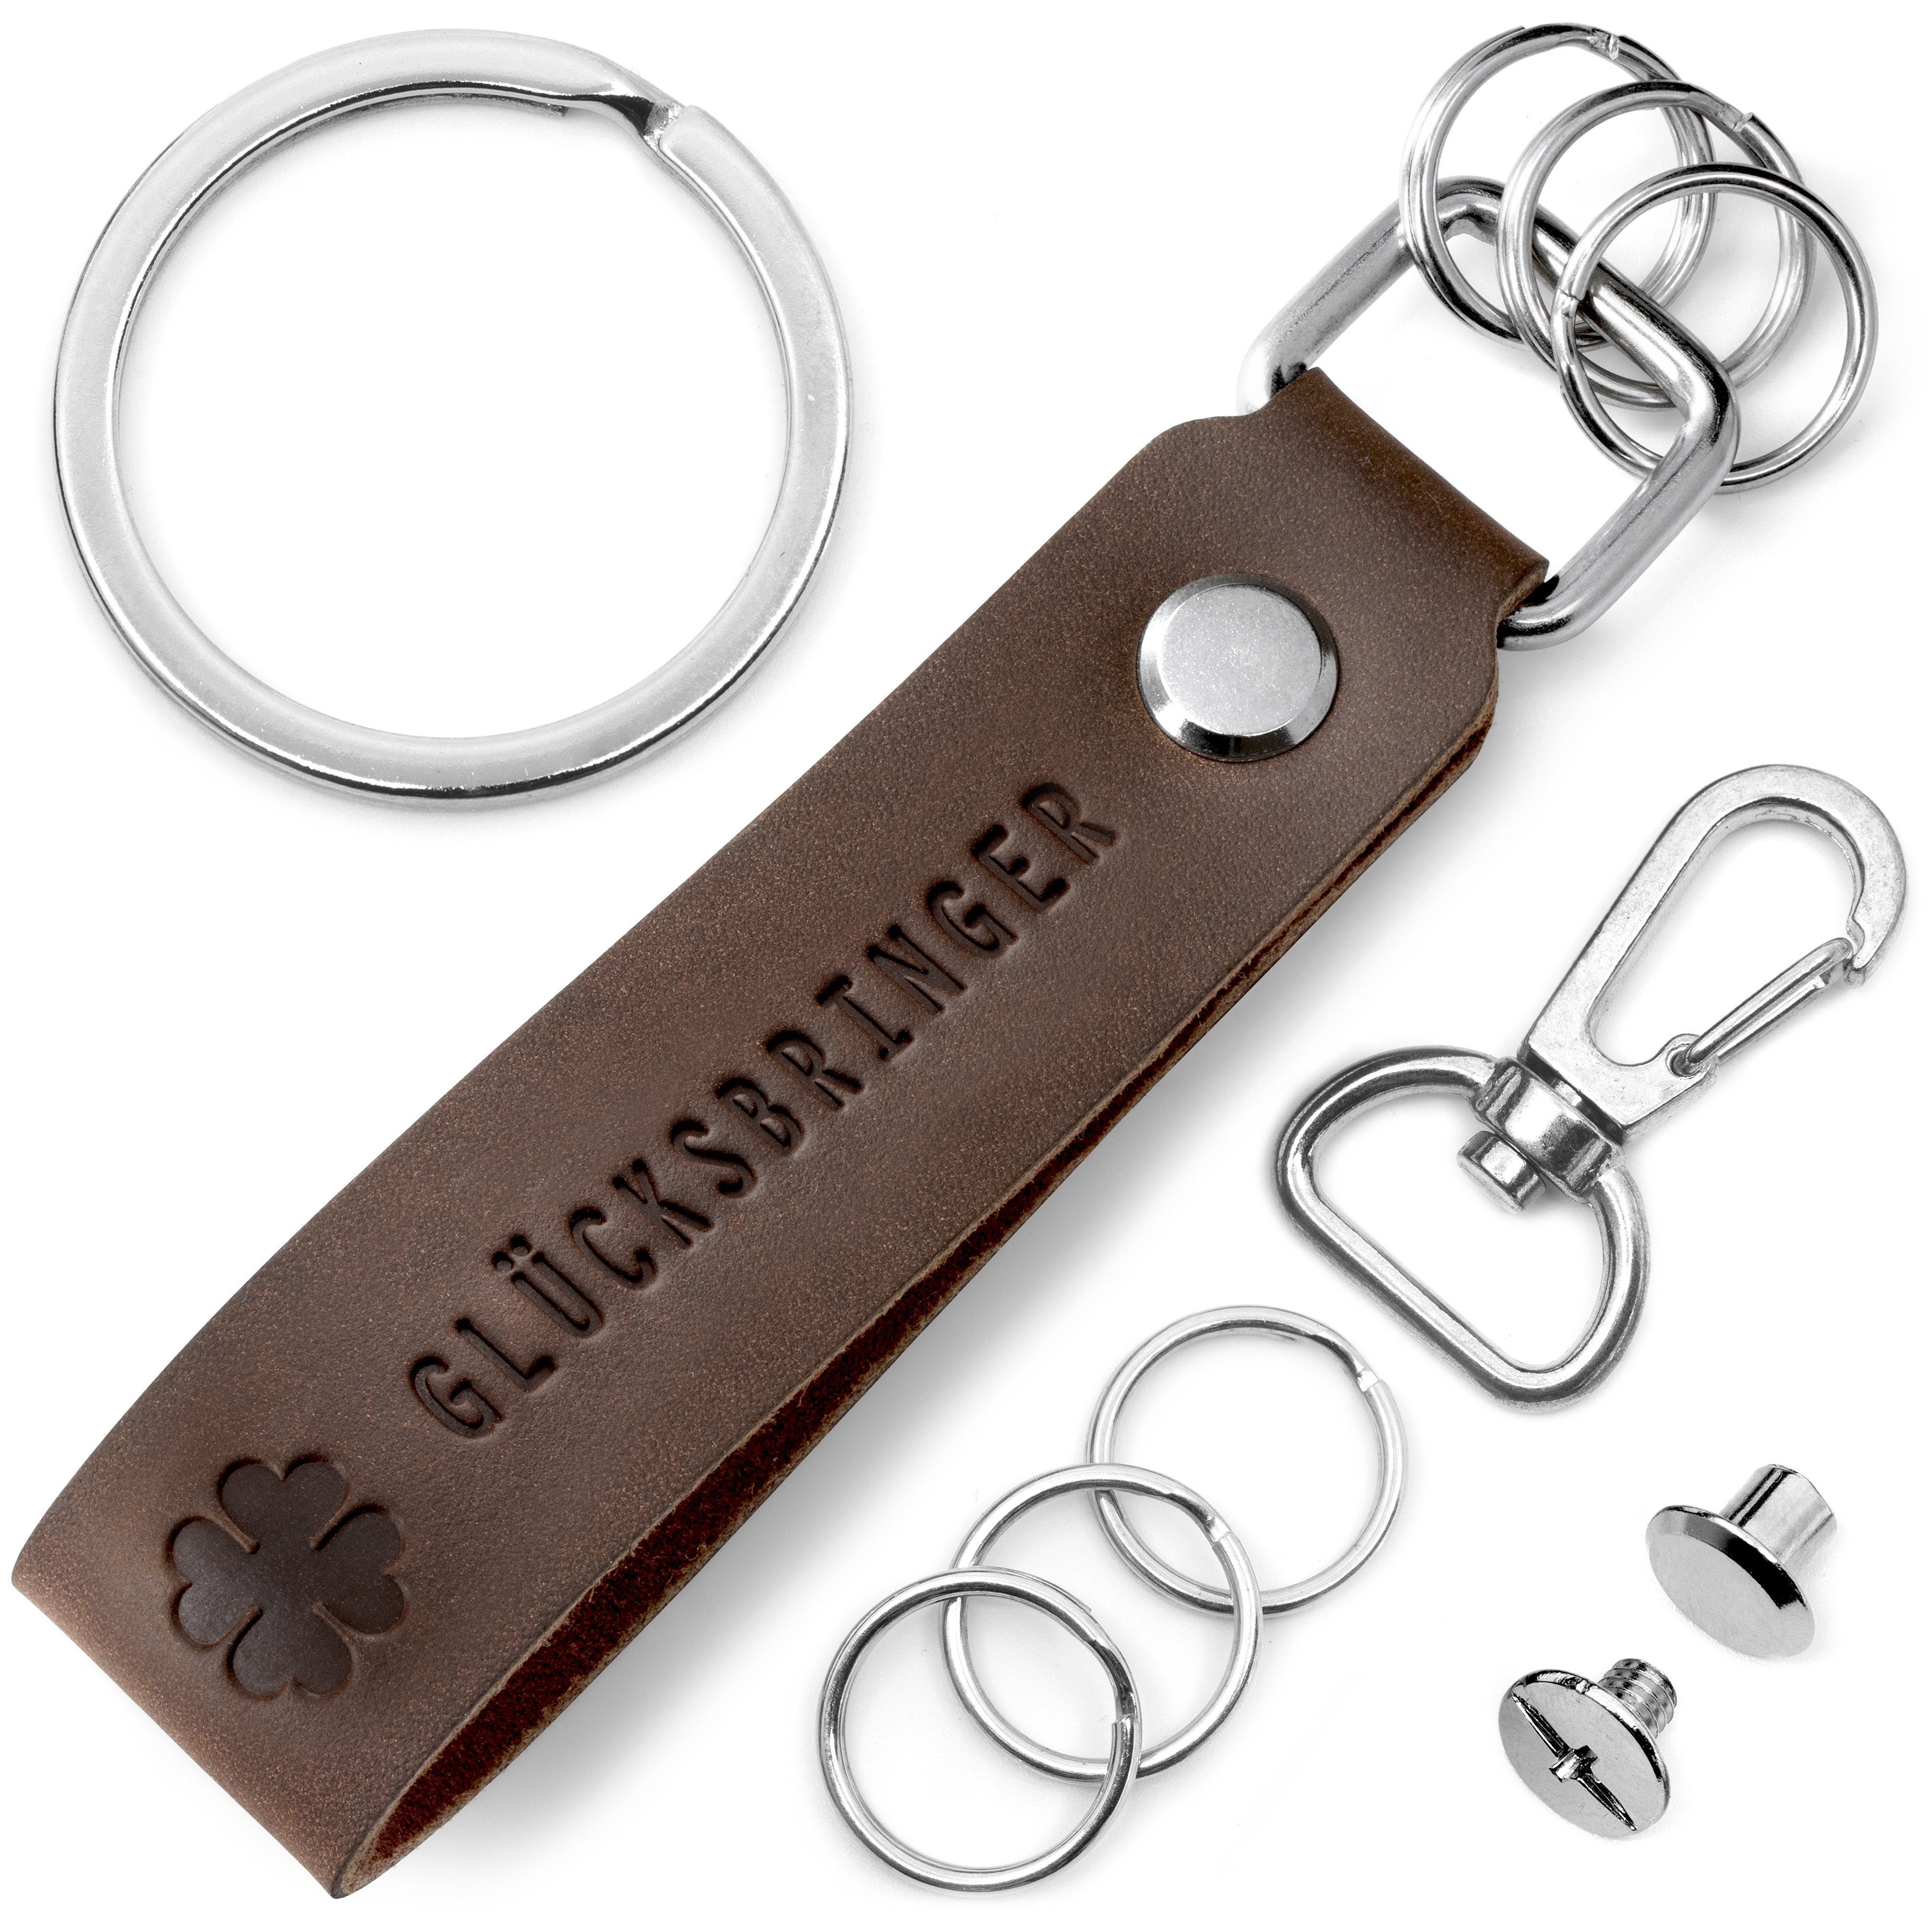 [Sehr willkommen] FABACH Schlüsselanhänger Leder Gravur "Glücksbringer" - Schlüsselring Braun Anhänger wechselbarem mit